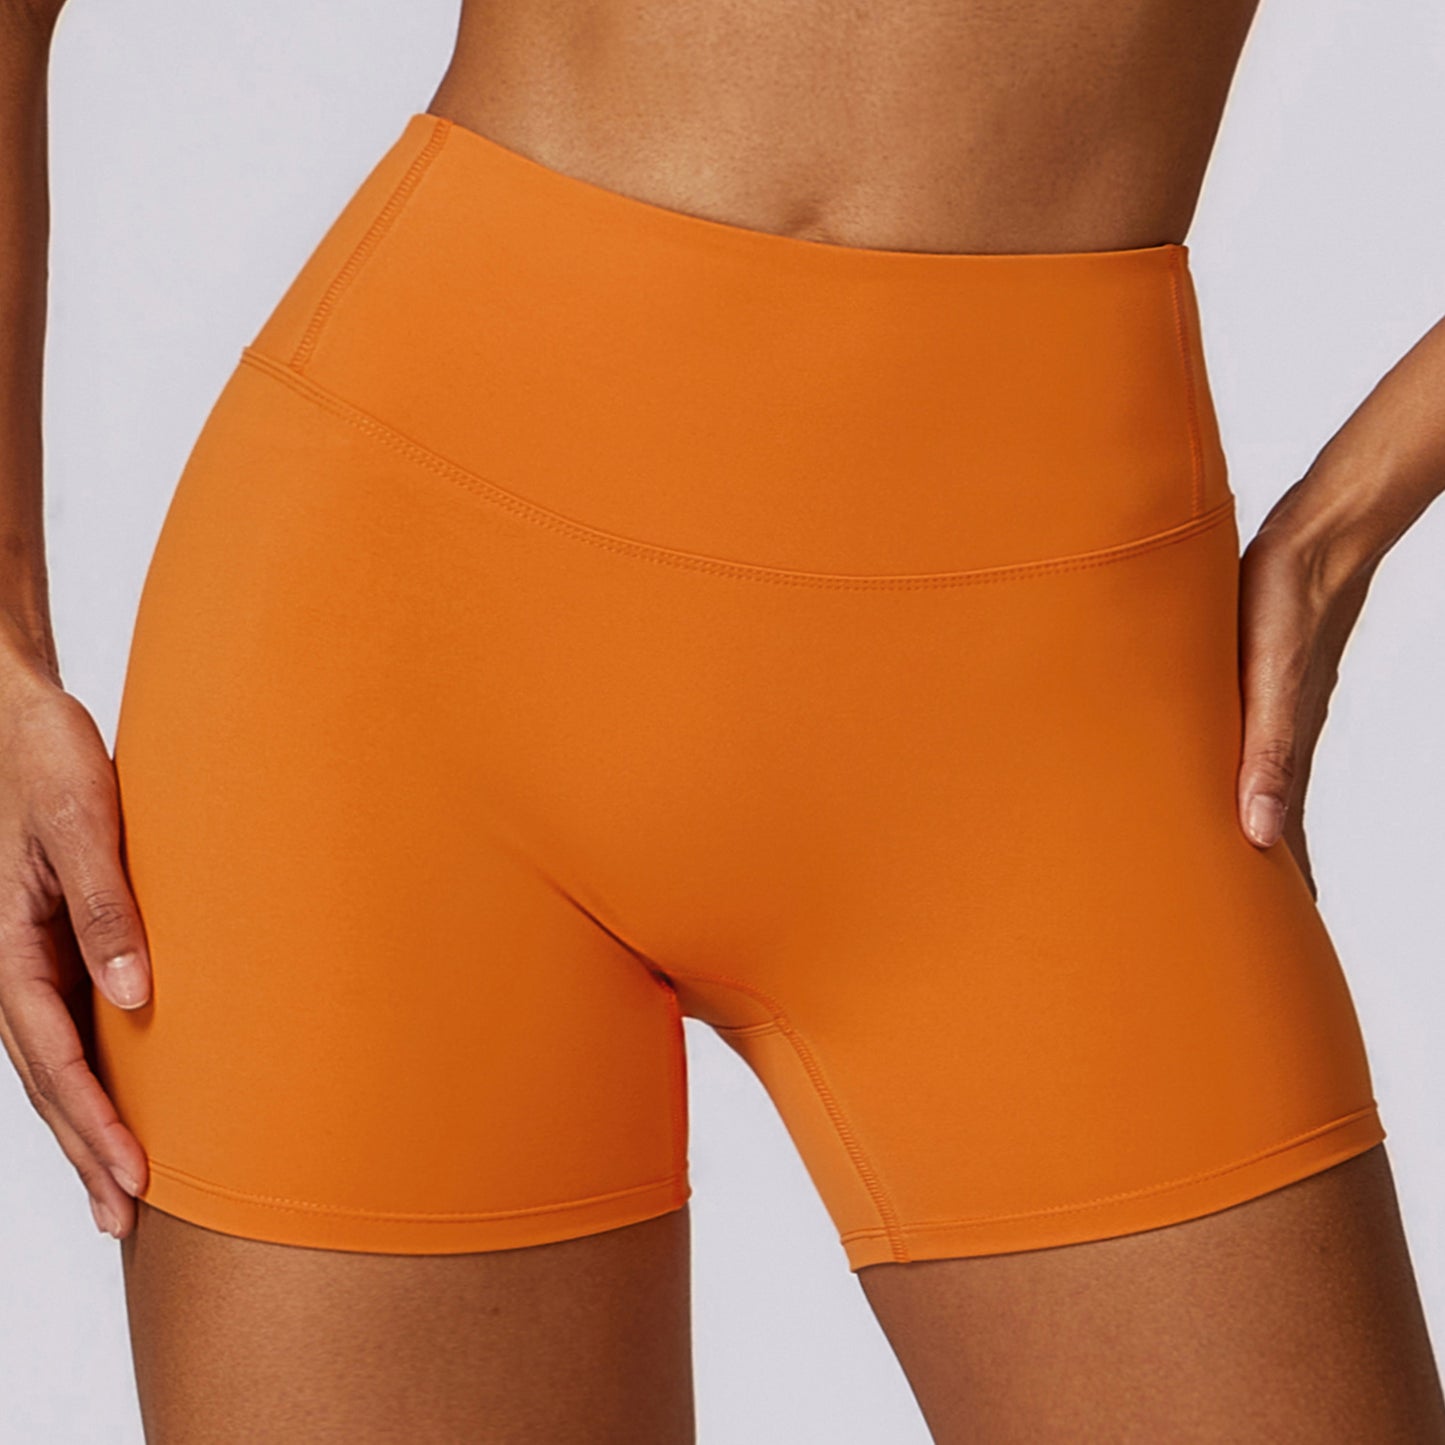 02/2024 Yoga pants women's high waist hip lifting sports shorts women's outerwear running fitness shorts BDK8047